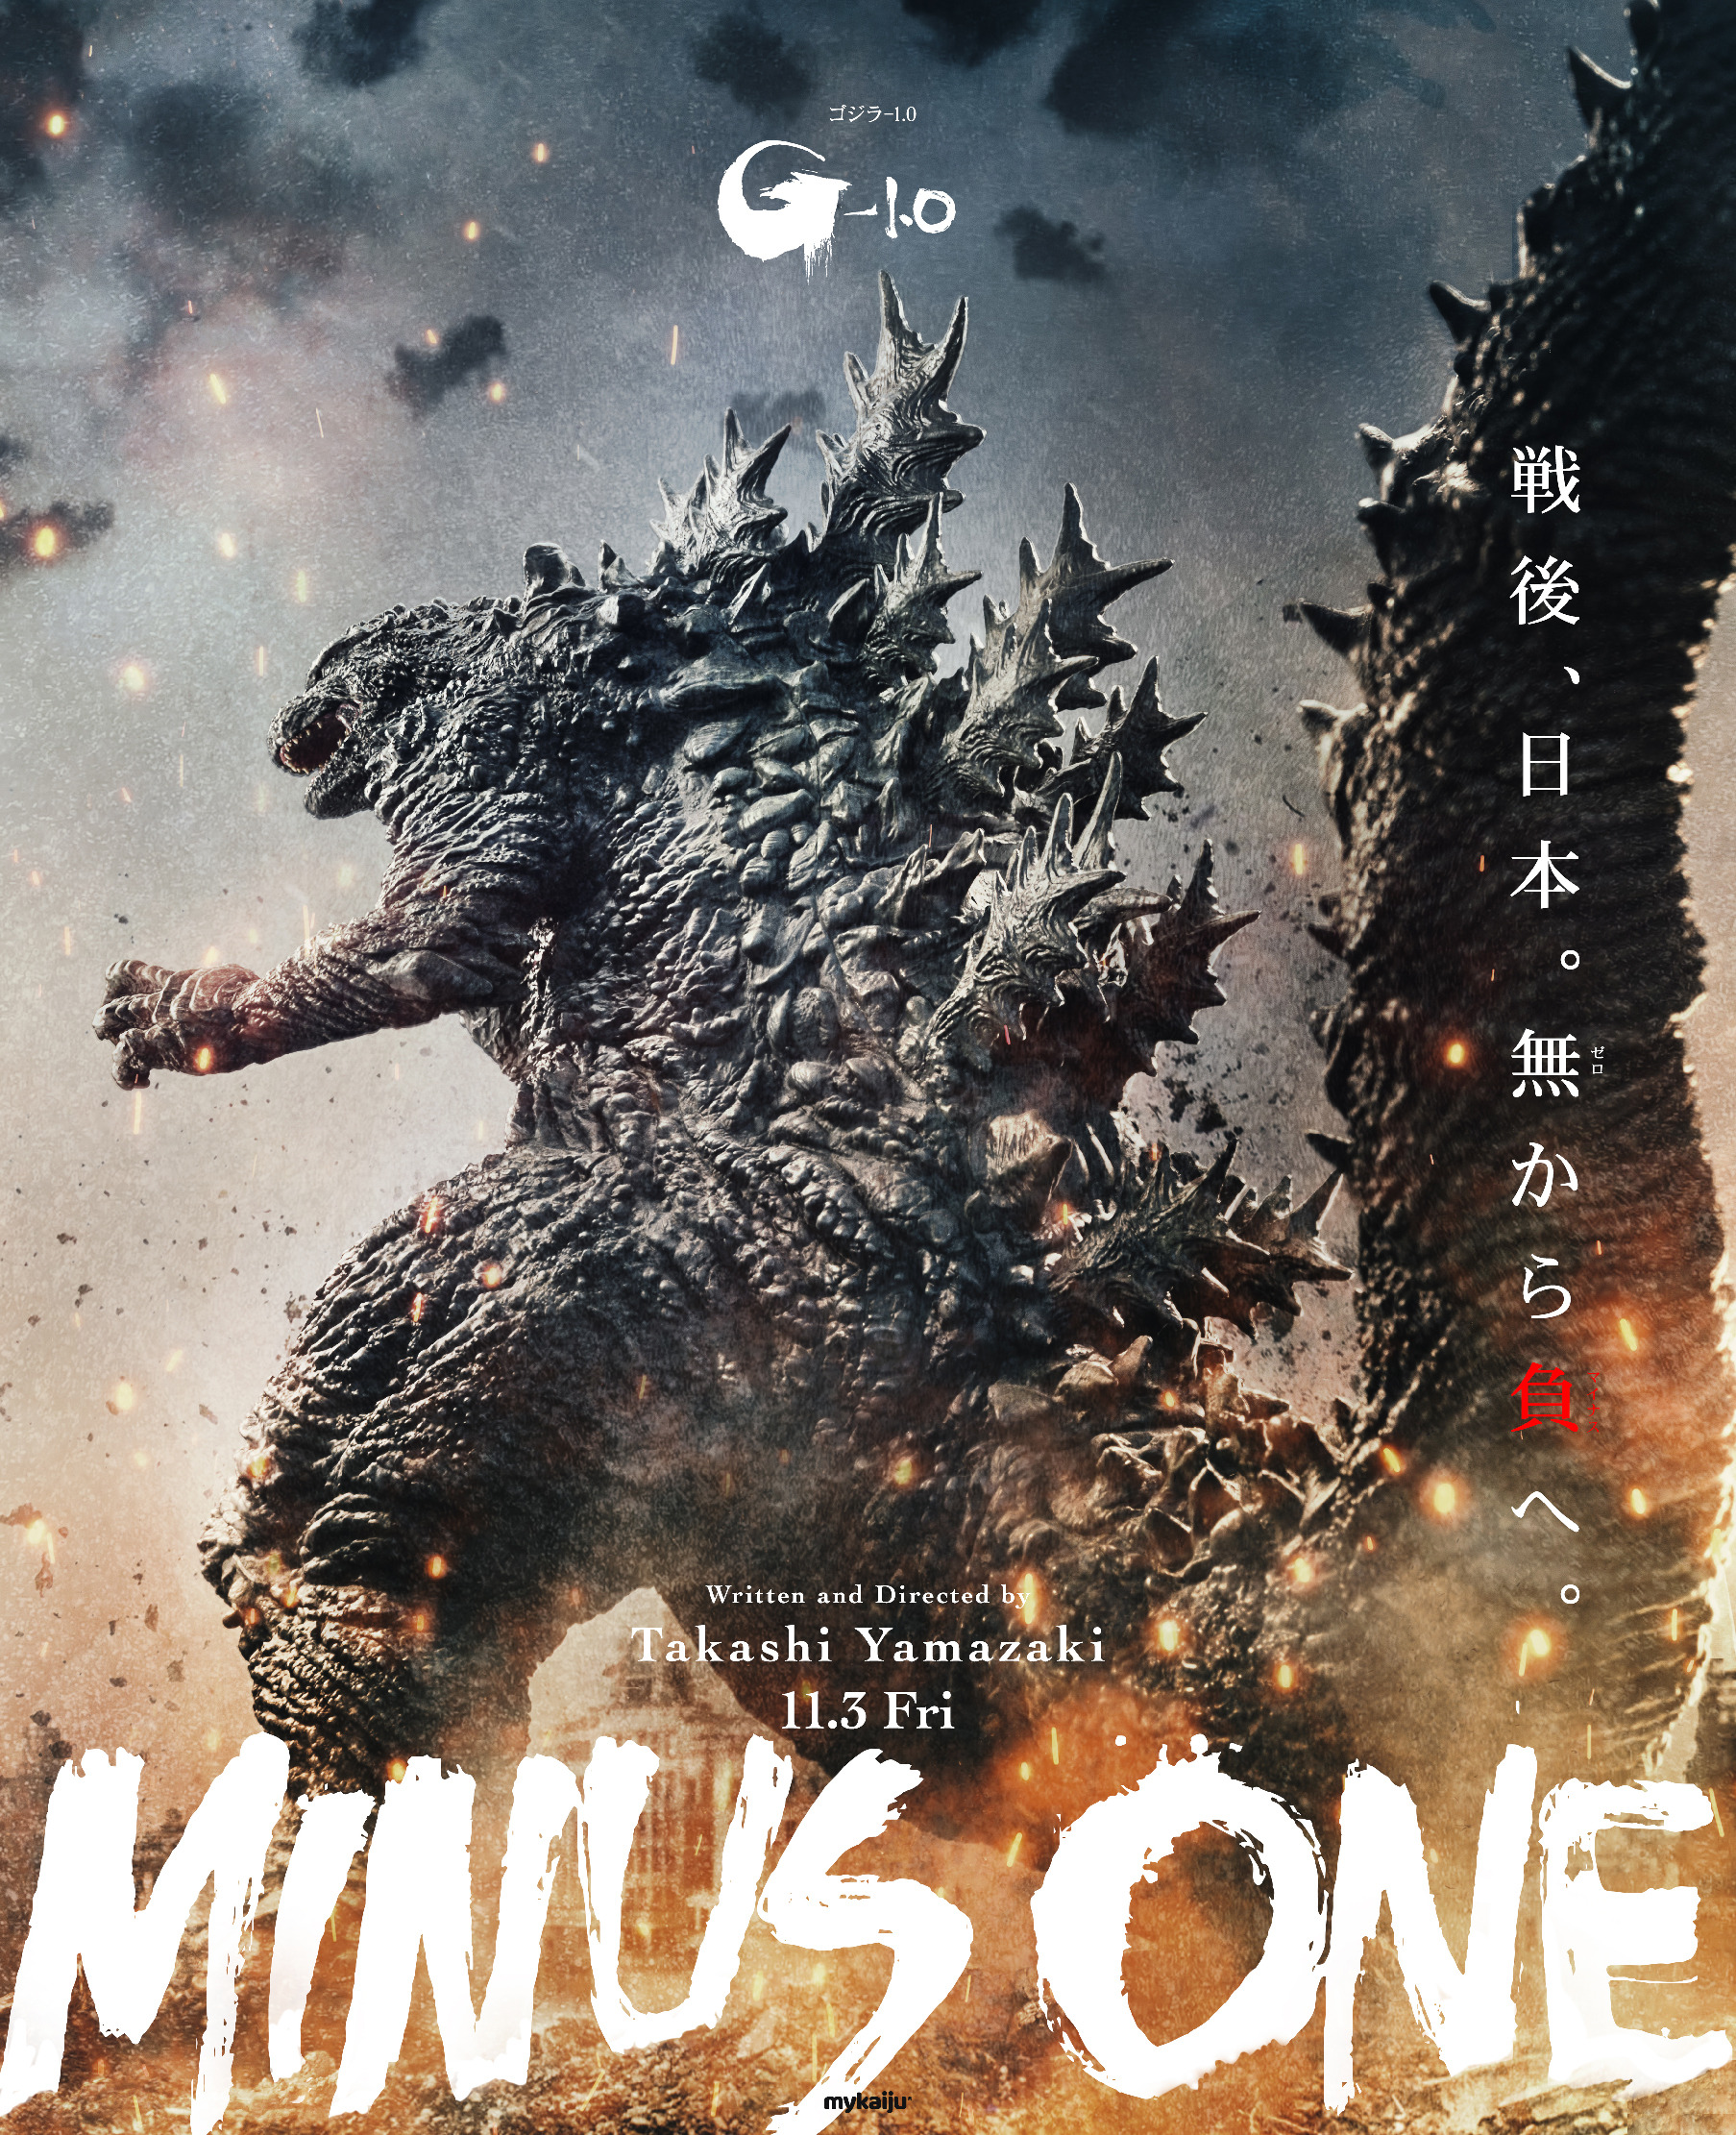 Mega Sized Movie Poster Image for Godzilla: Minus One (#6 of 11)